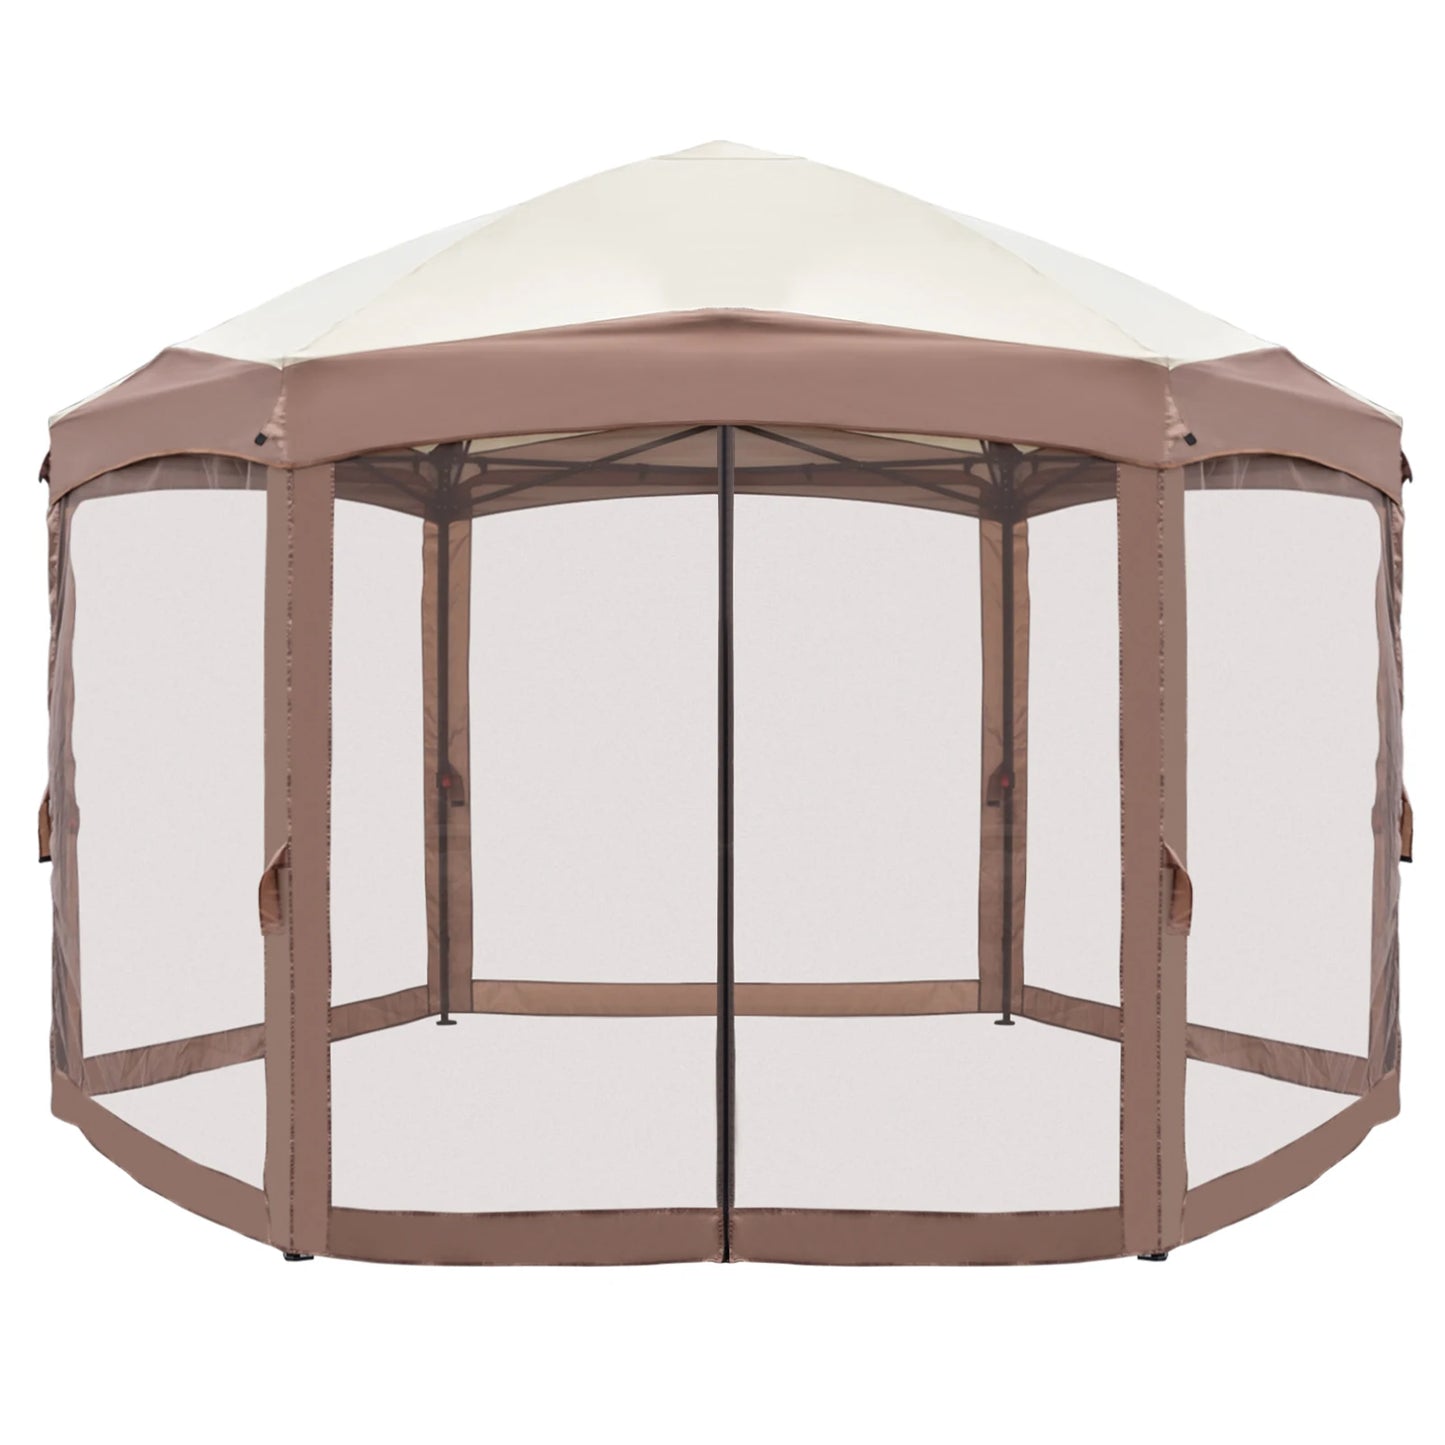 10'X12' Outdoor Gazebo Canopy, Steel Frame Waterproof Top